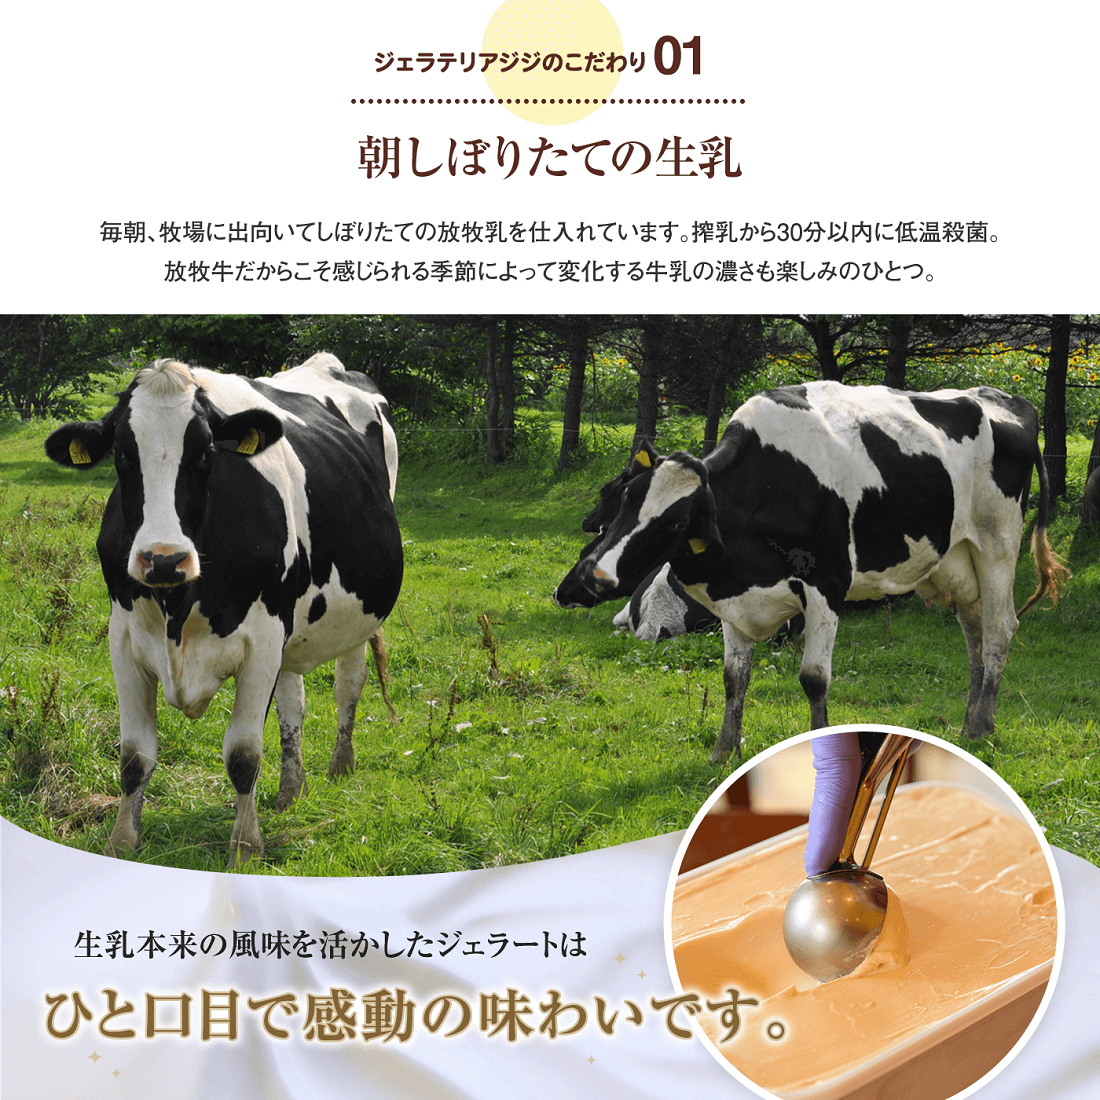 【業務用サイズ】水本牧場の放牧牛の生乳を使用したGigiのイタリア産ピスタチオ2000ml【43020】